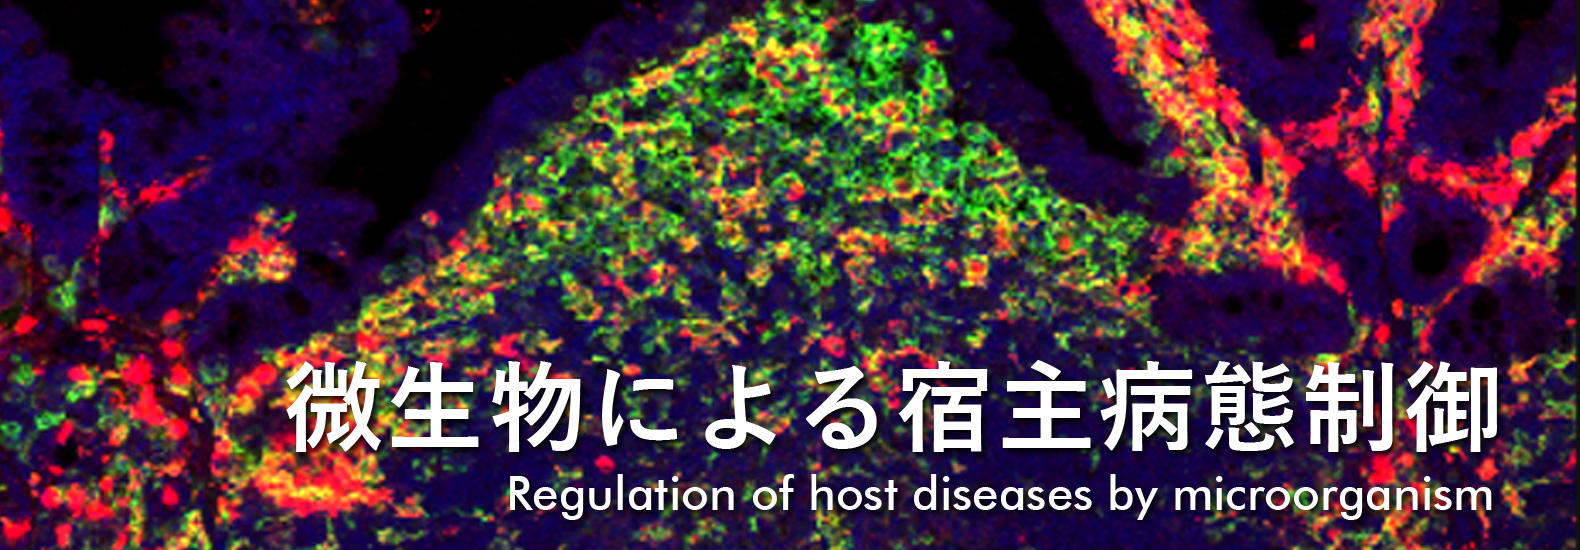 微生物による宿主病態制御 Regulation of host diseases by microorganism